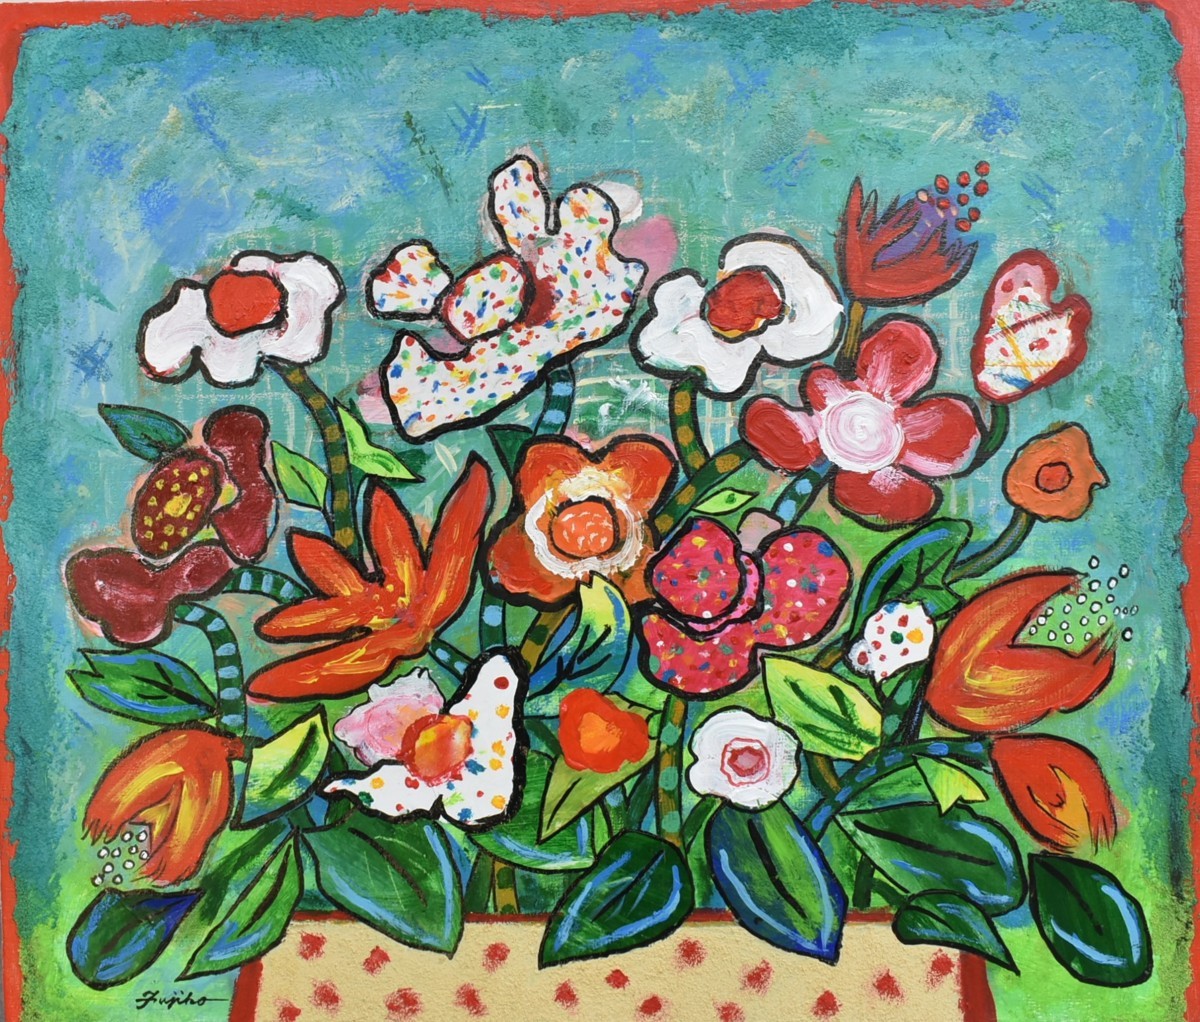 Nueva pintura al óleo del popular artista Fujiko Shirai, No. 10 Flores de banquete [Galería Masami], Cuadro, Pintura al óleo, Naturaleza muerta